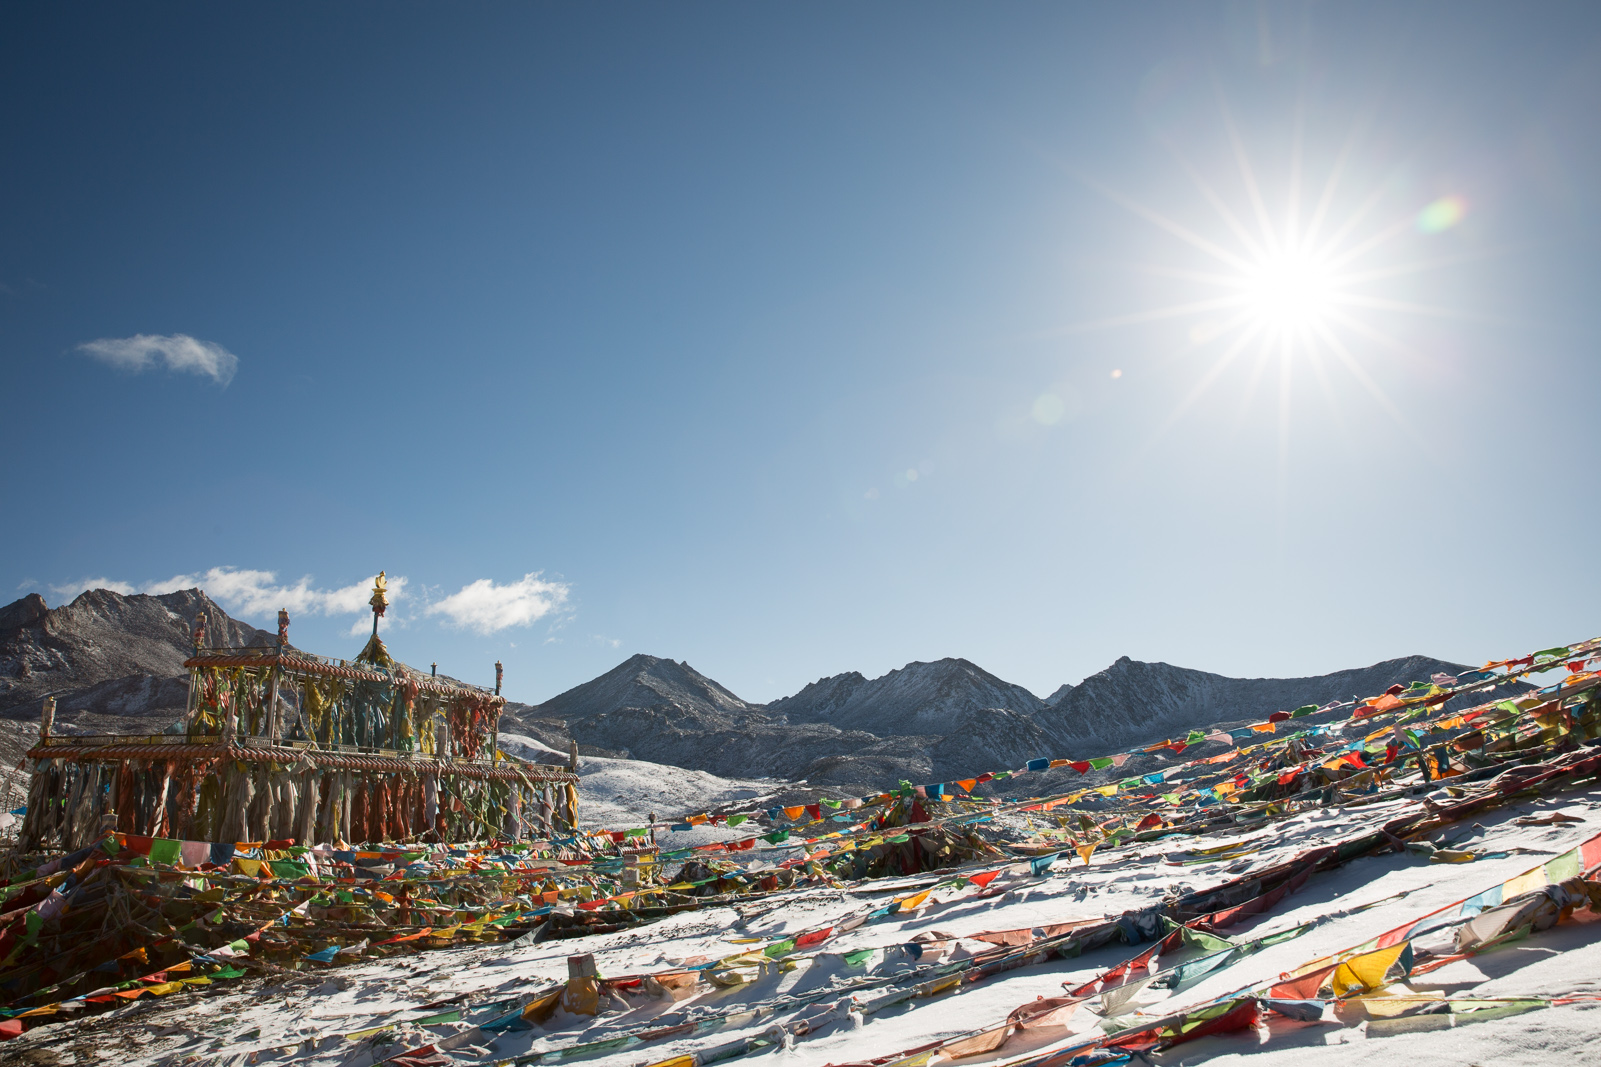 Zhe-Duo Mountain Pass,  Tibetan Autonomous Region, China